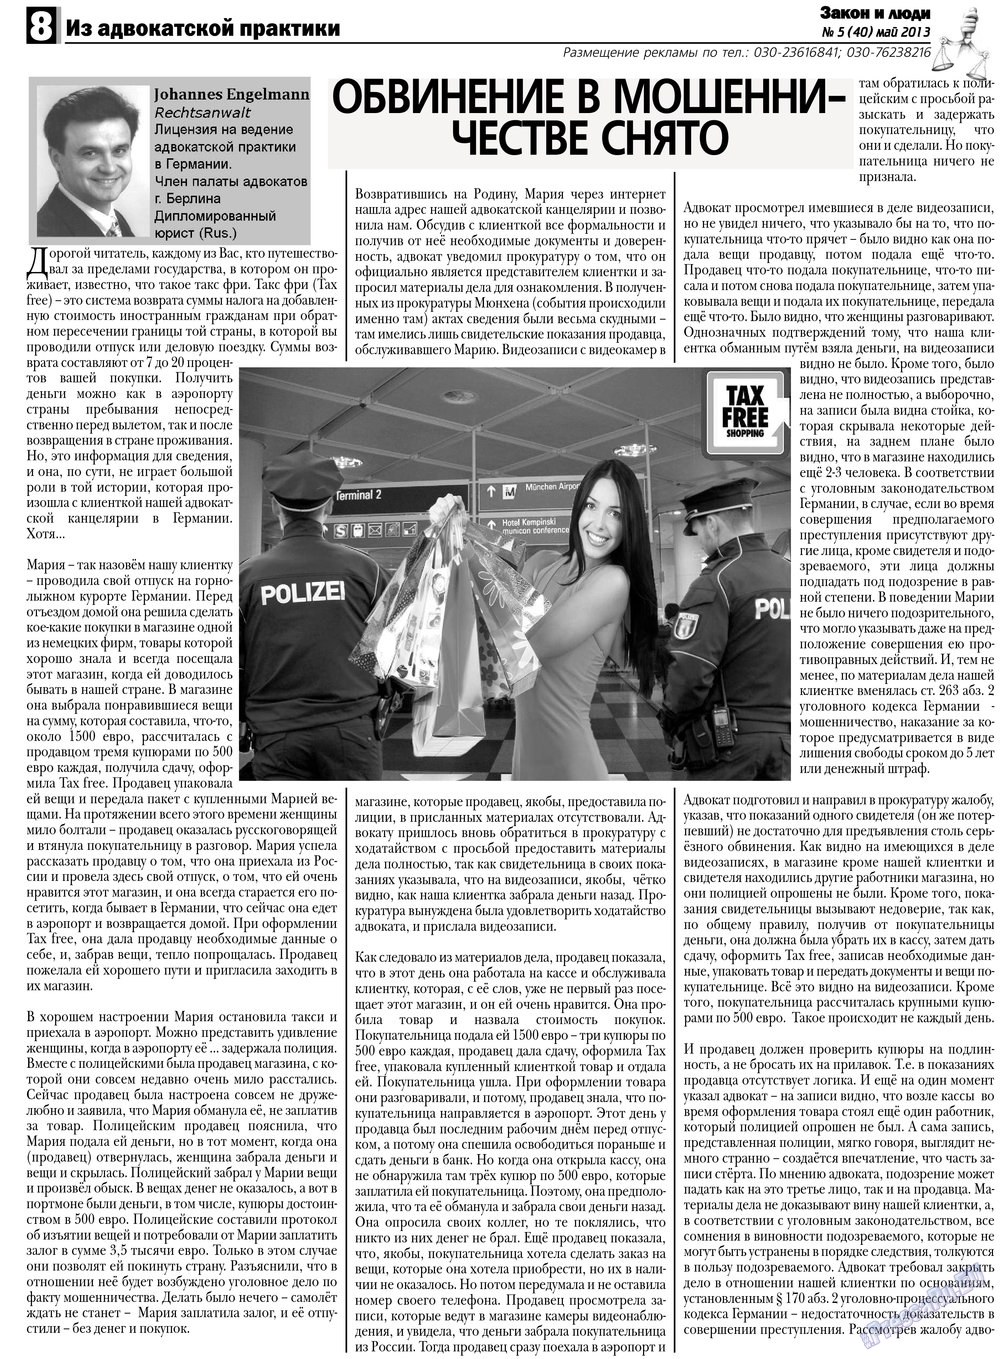 Закон и люди, газета. 2013 №5 стр.8